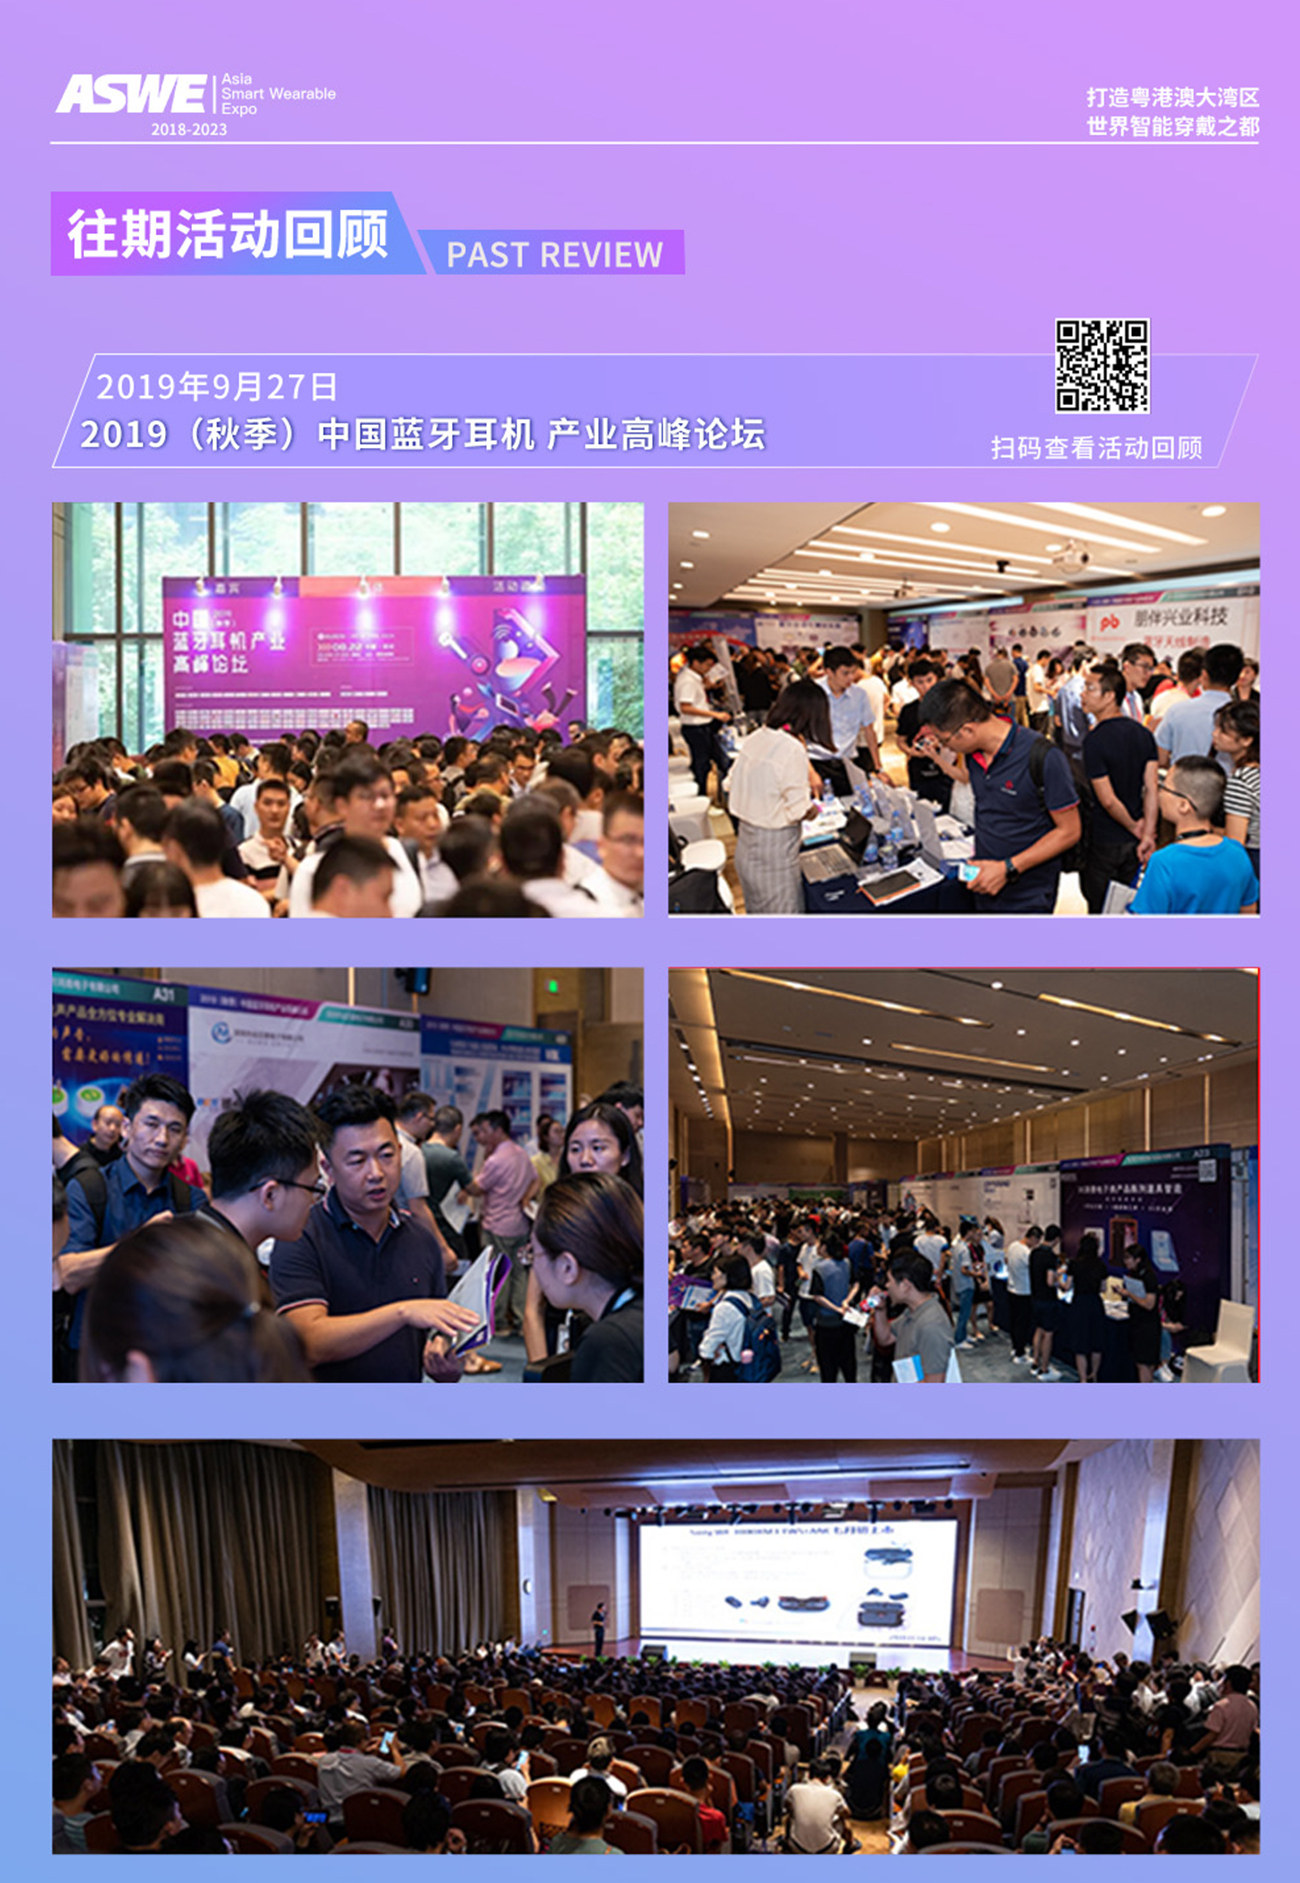 2023（春季）亚洲VR技术研讨大会-亚洲智能穿戴展